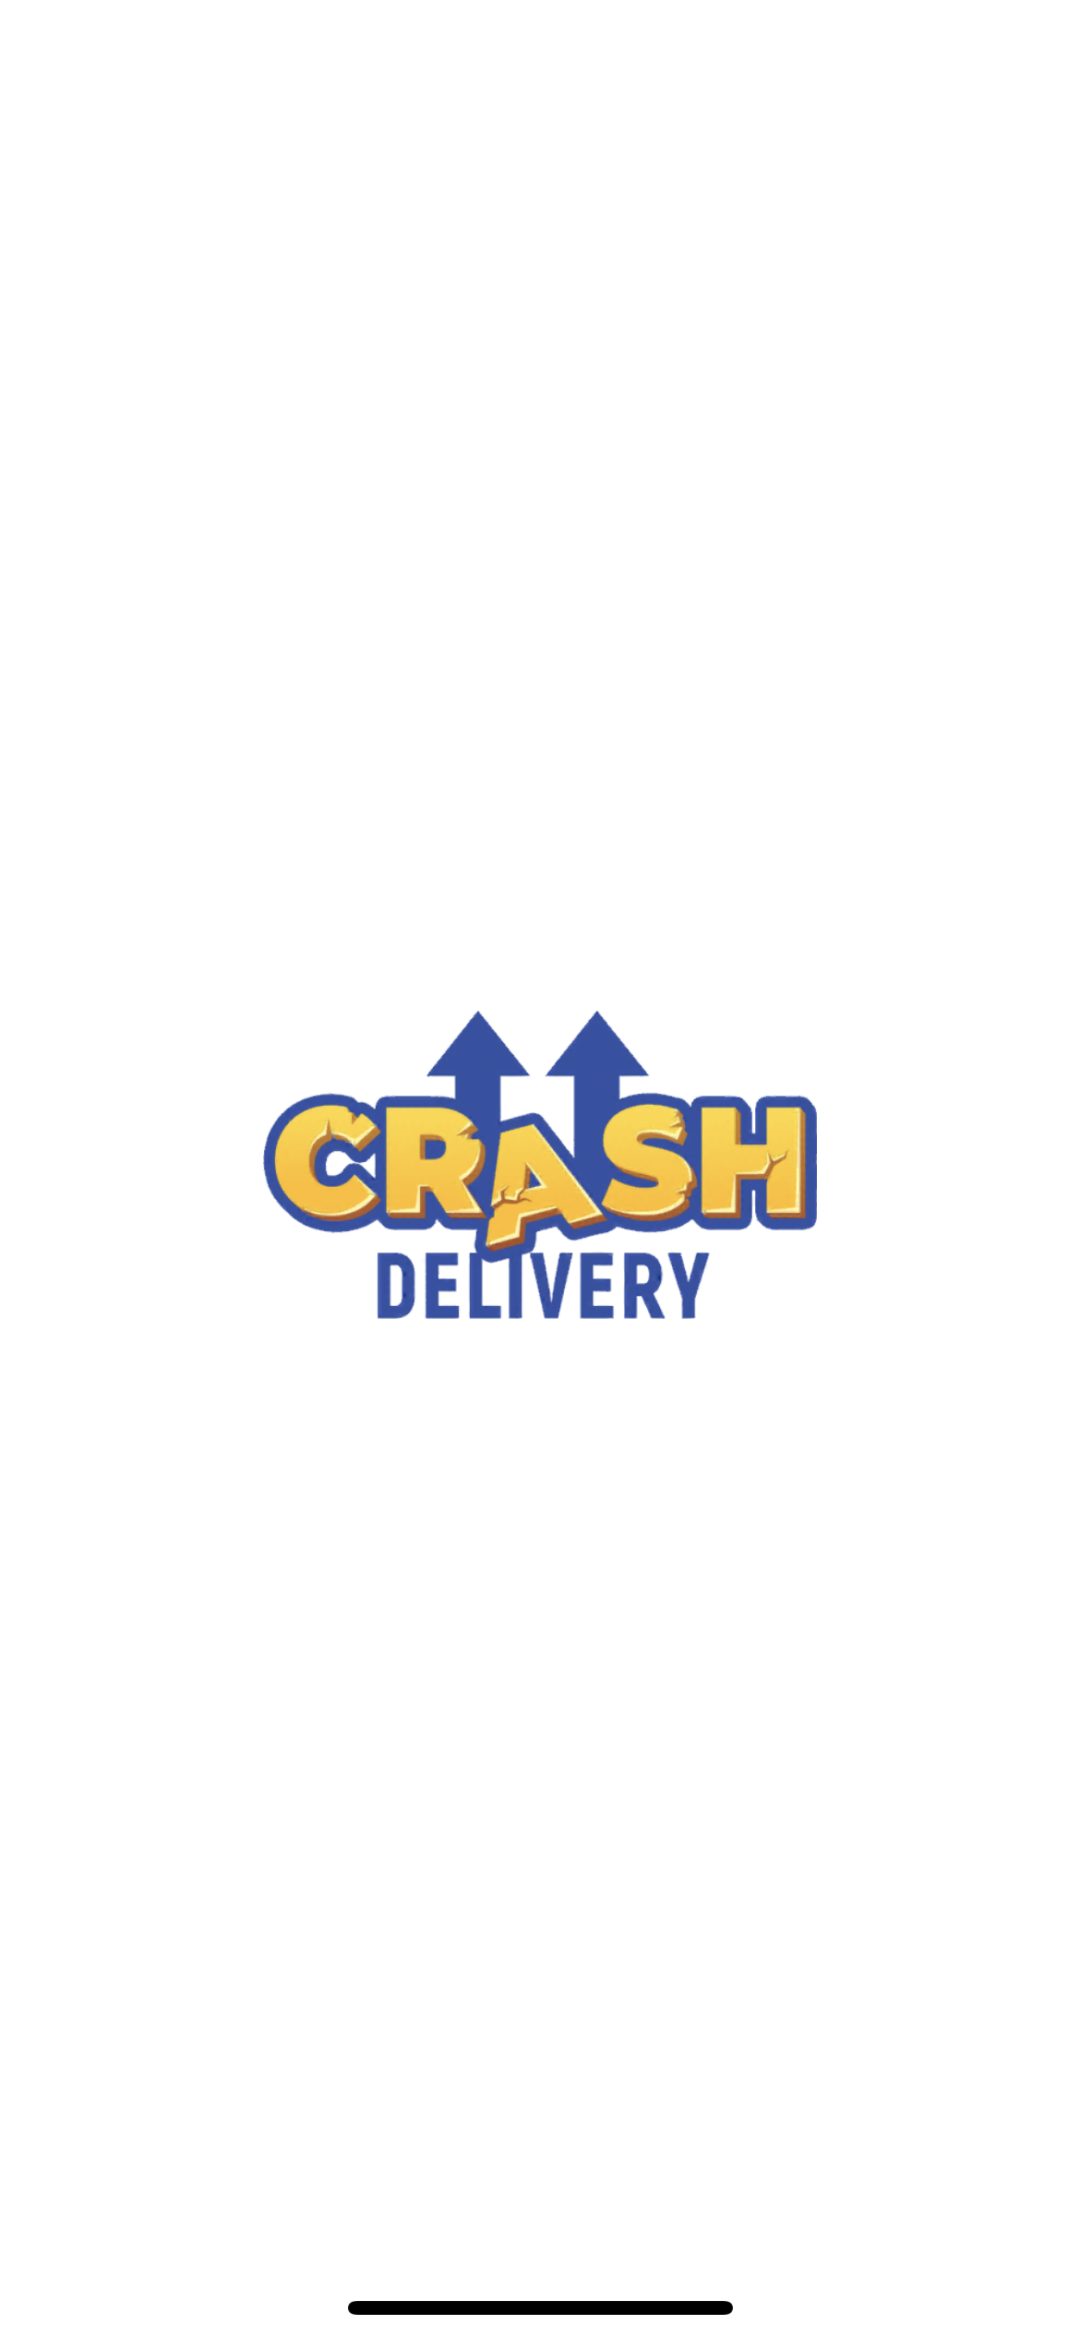 Crash Delivery